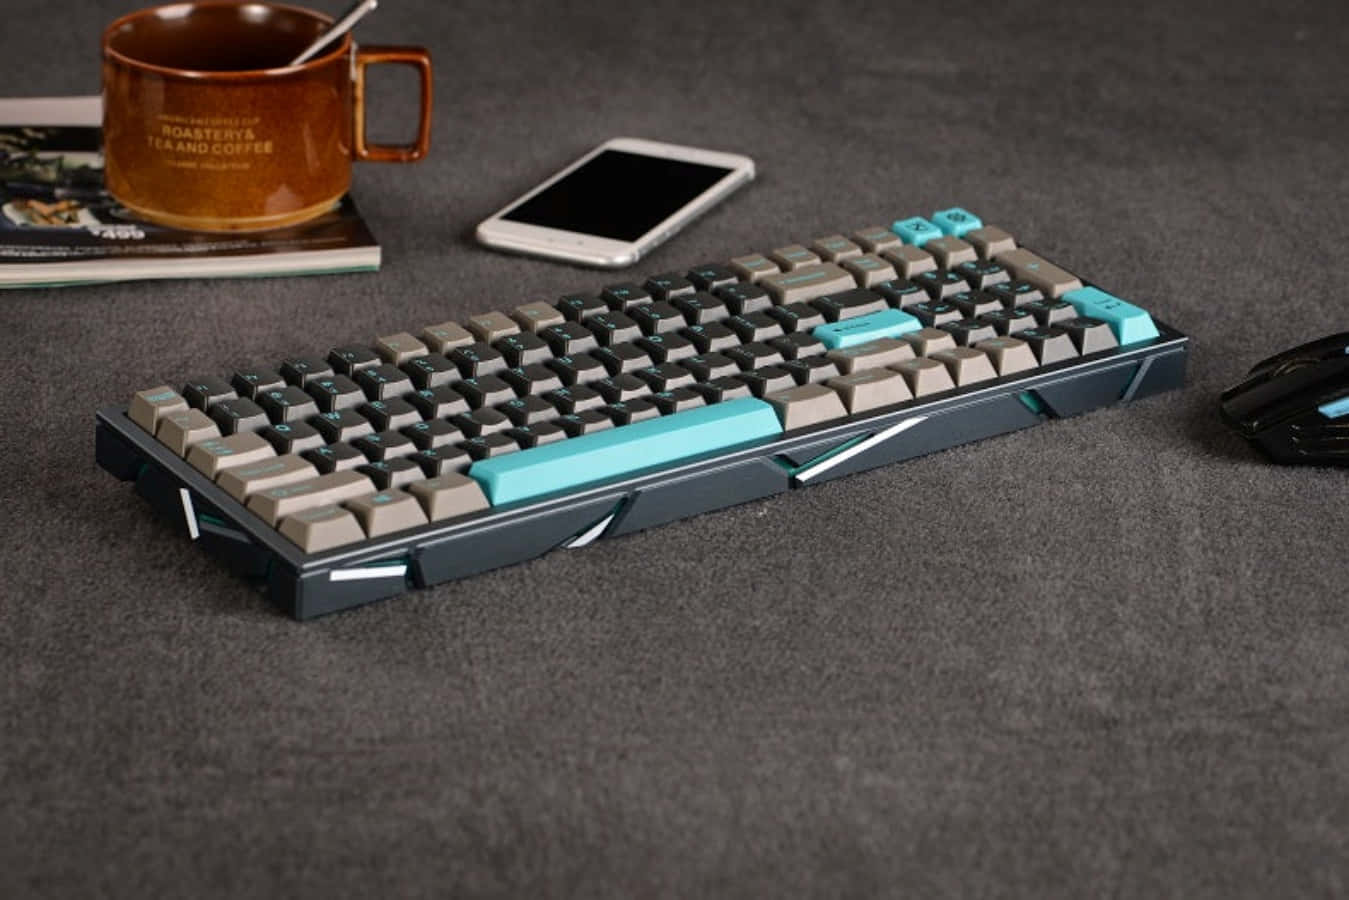 Steigernsie Ihre Schreibgeschwindigkeit Und Effizienz Mit Dieser Tastatur.